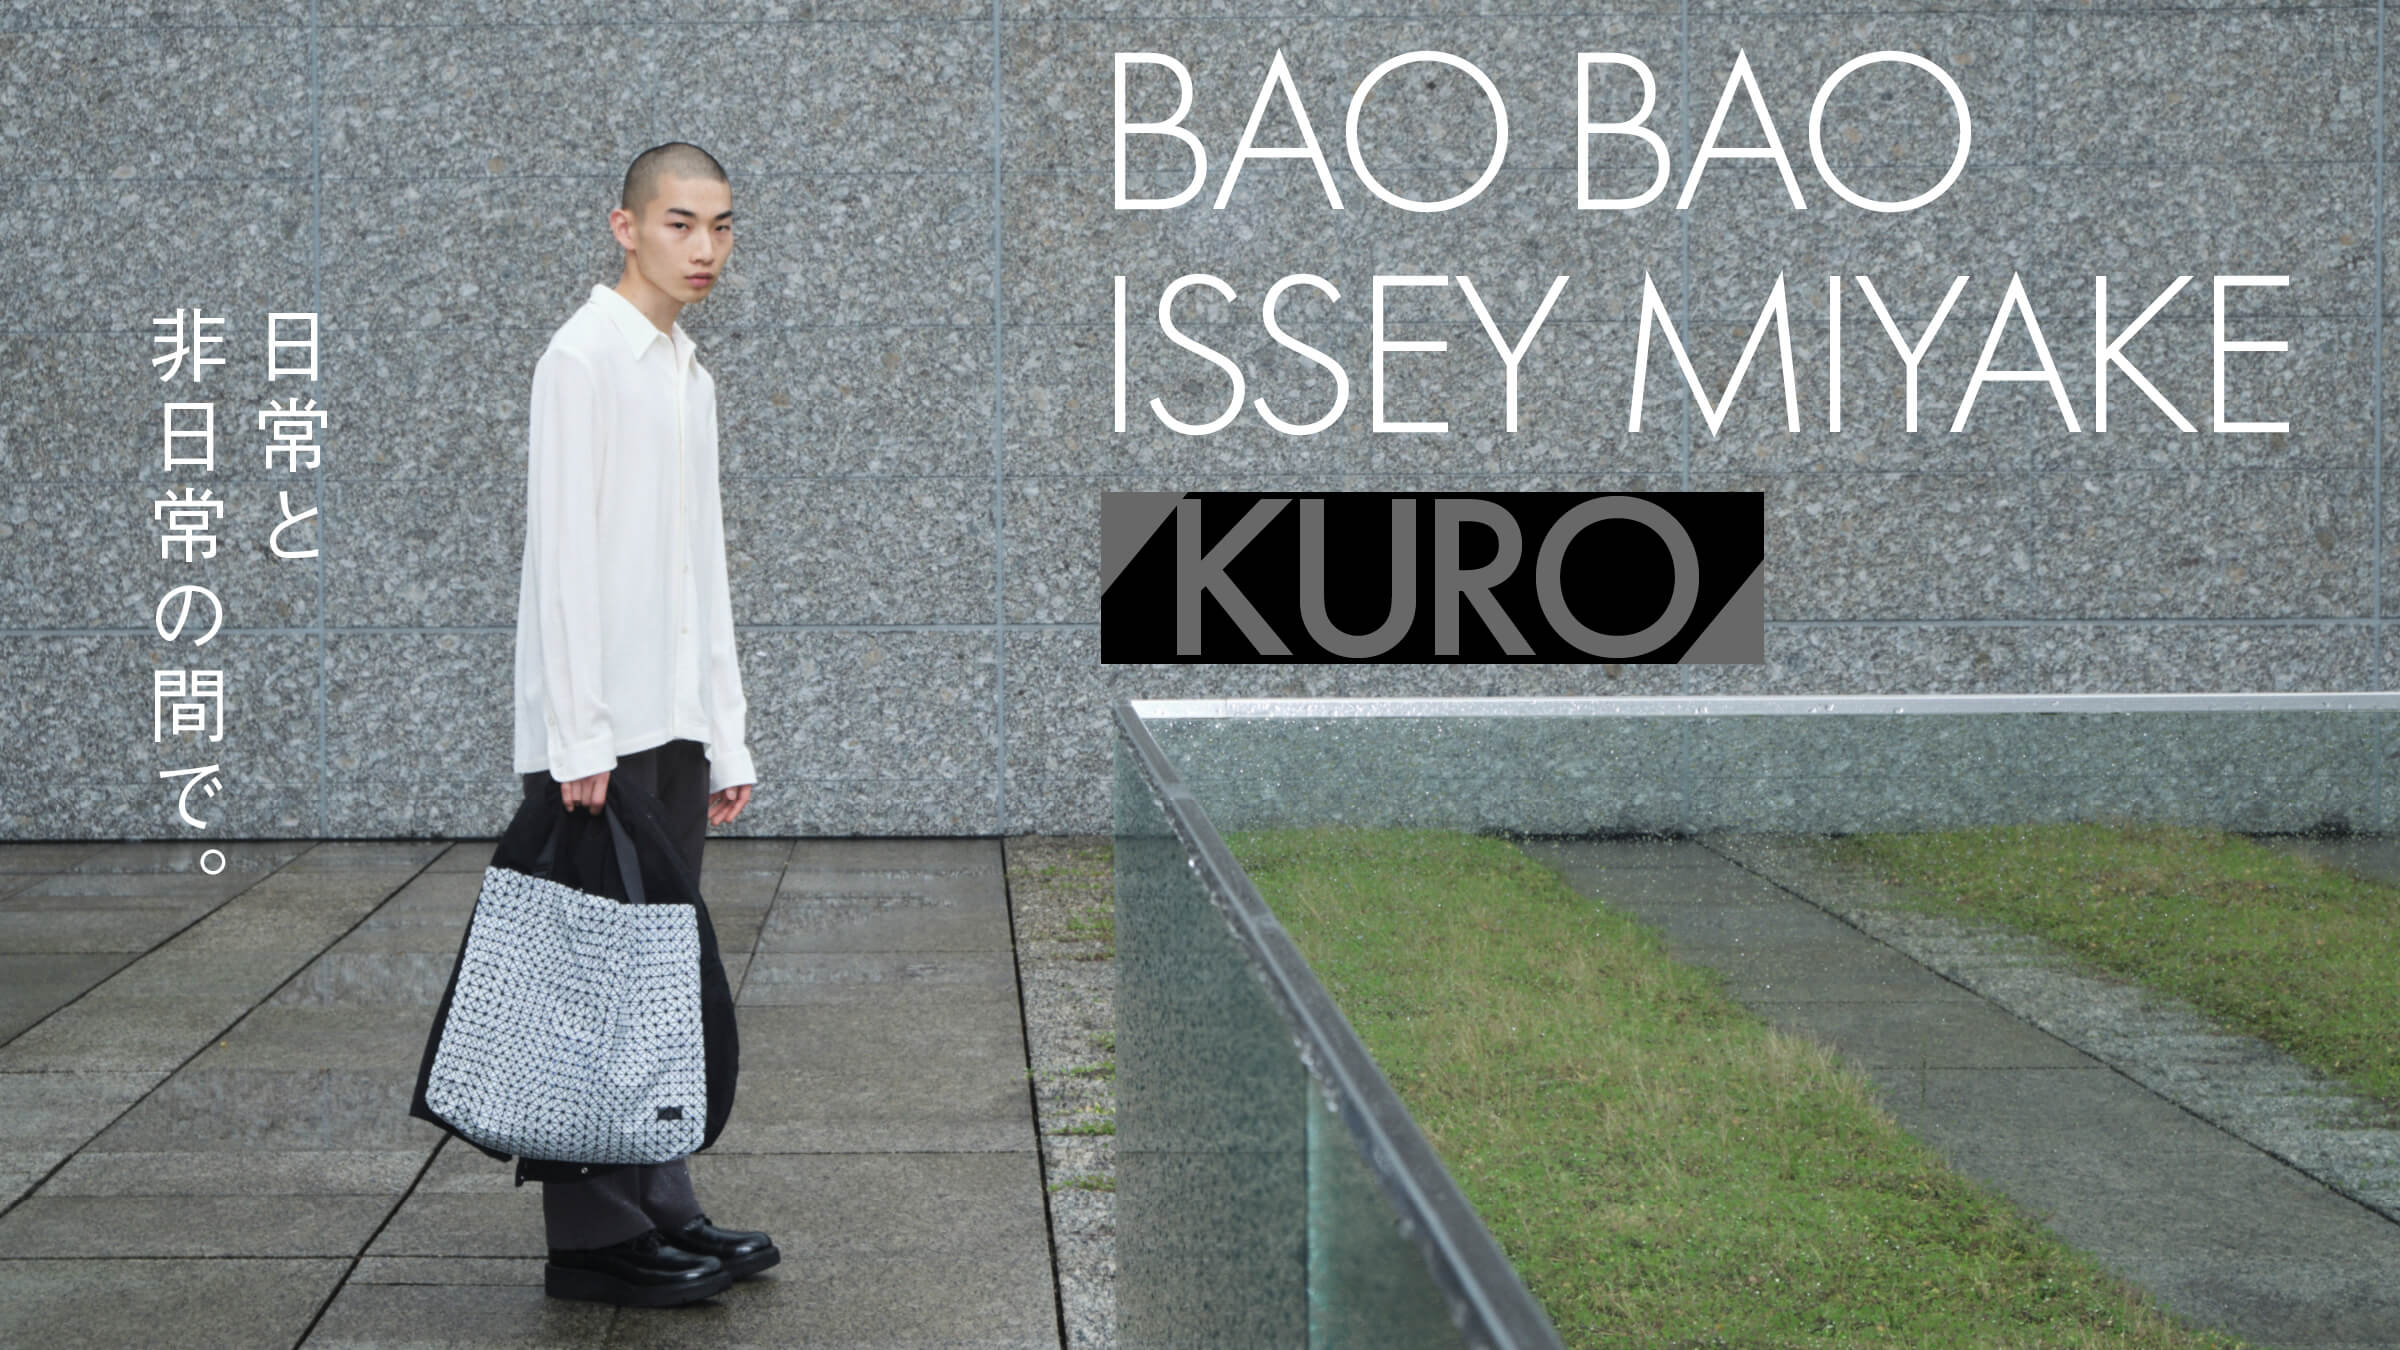 BAO BAO ISSEY MIYAKE「KURO」日常と非日常の間で。